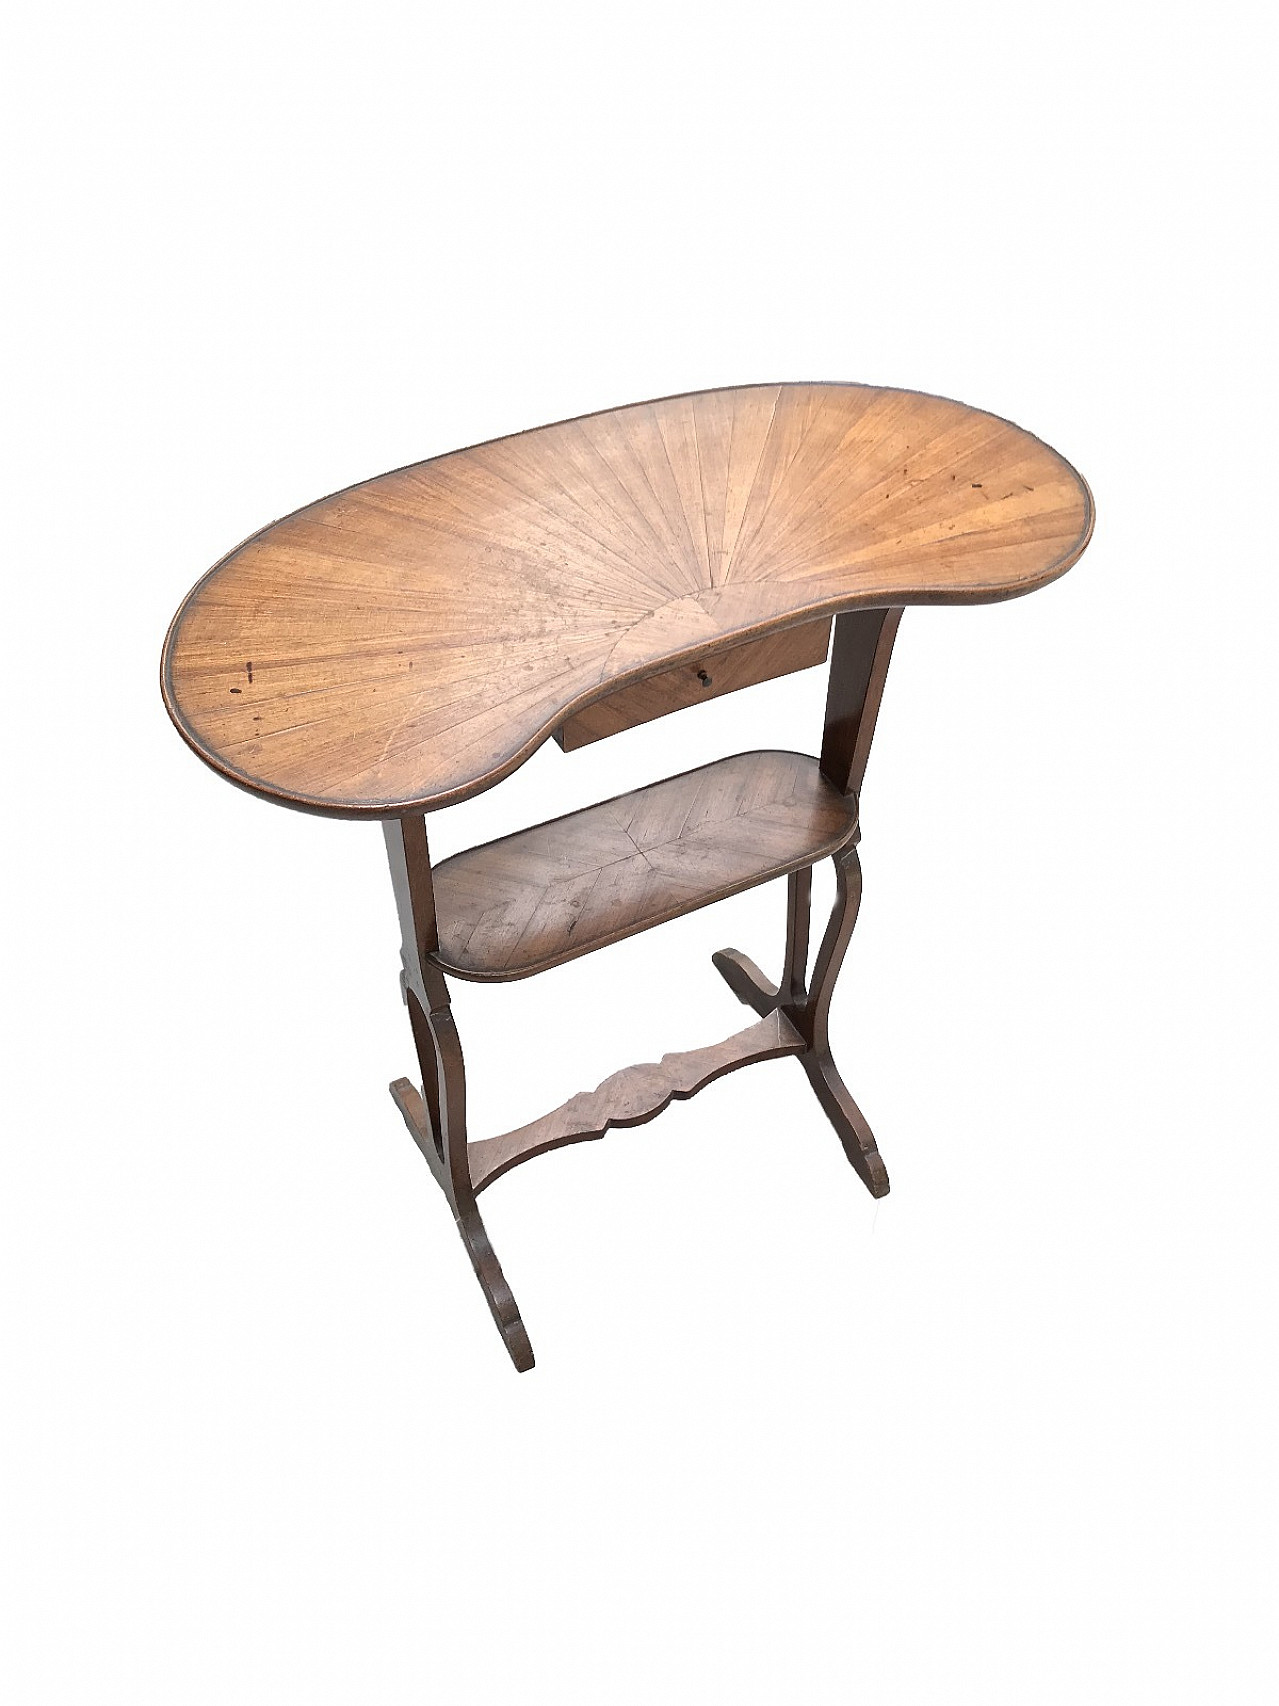 Bean-shaped table in mahogany and walnut, mid-1800s 1